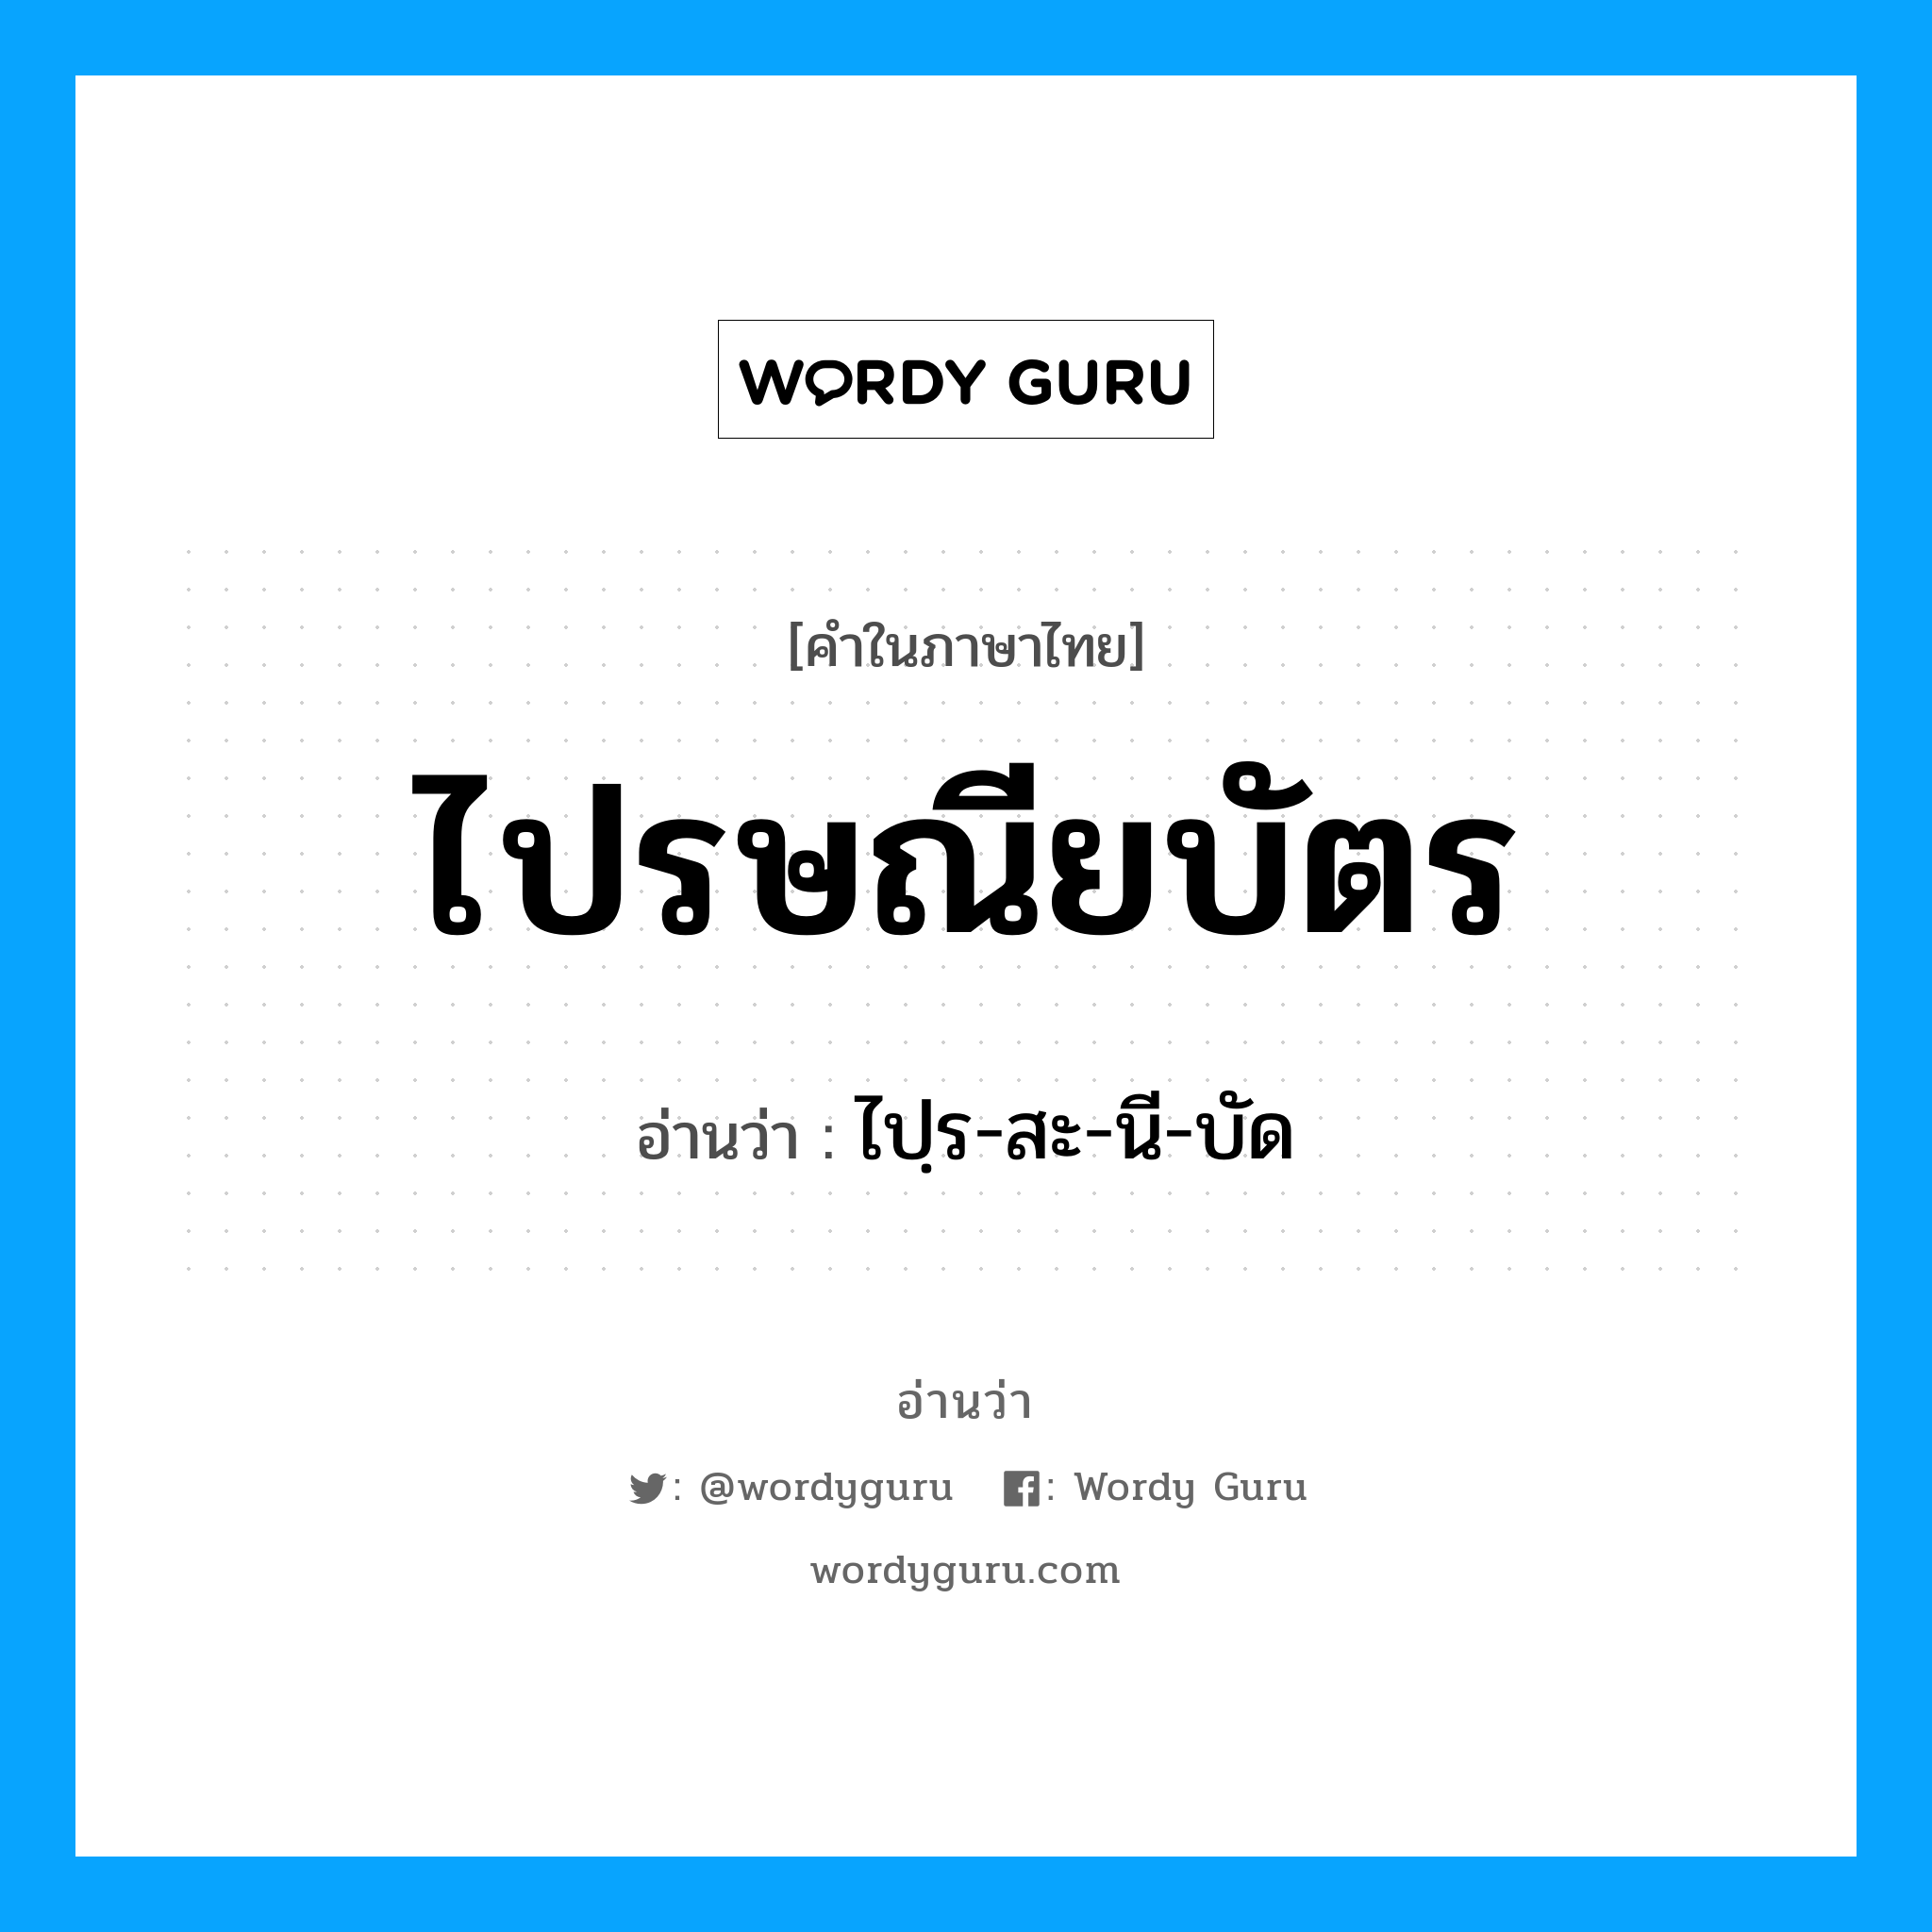 ไปฺร-สะ-นี-บัด เป็นคำอ่านของคำไหน?, คำในภาษาไทย ไปฺร-สะ-นี-บัด อ่านว่า ไปรษณียบัตร